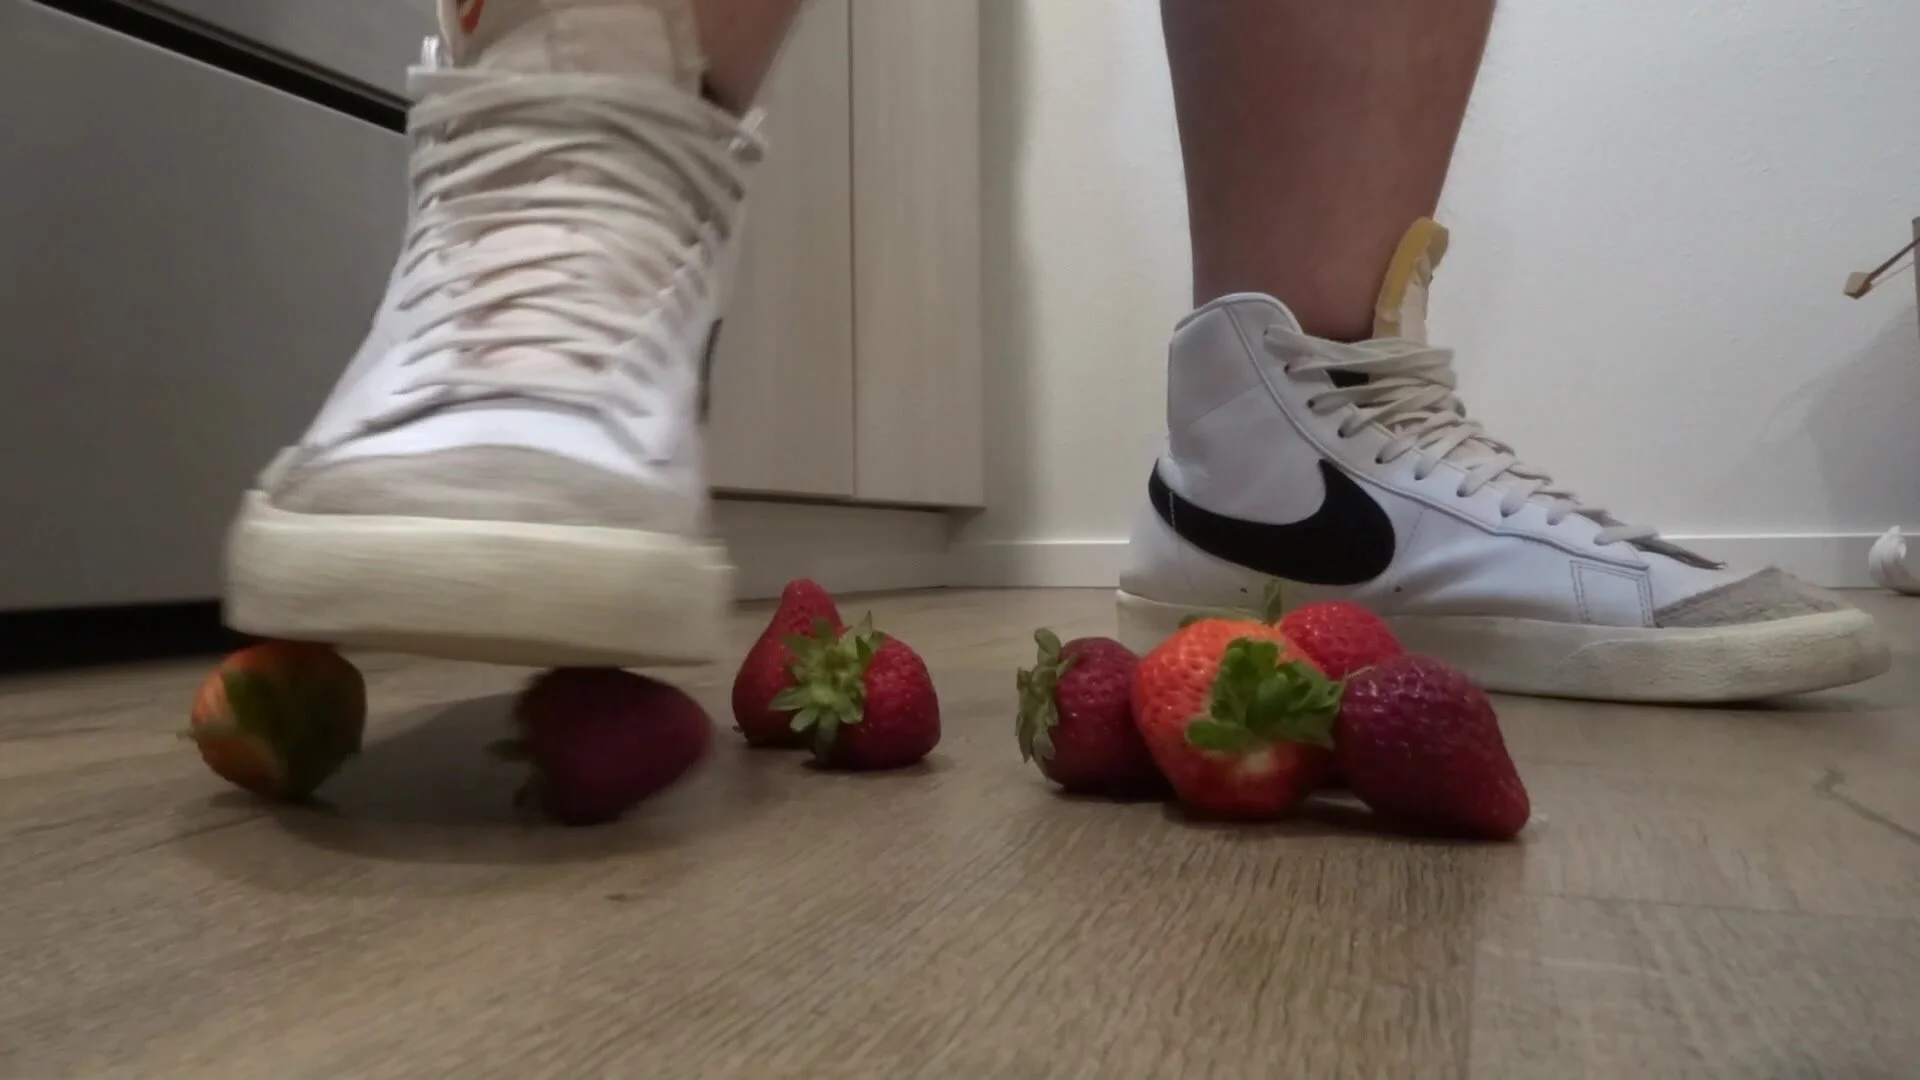 Blazers Com Hd Video - Nike Blazer Smash Strawberries - ThisVid.com